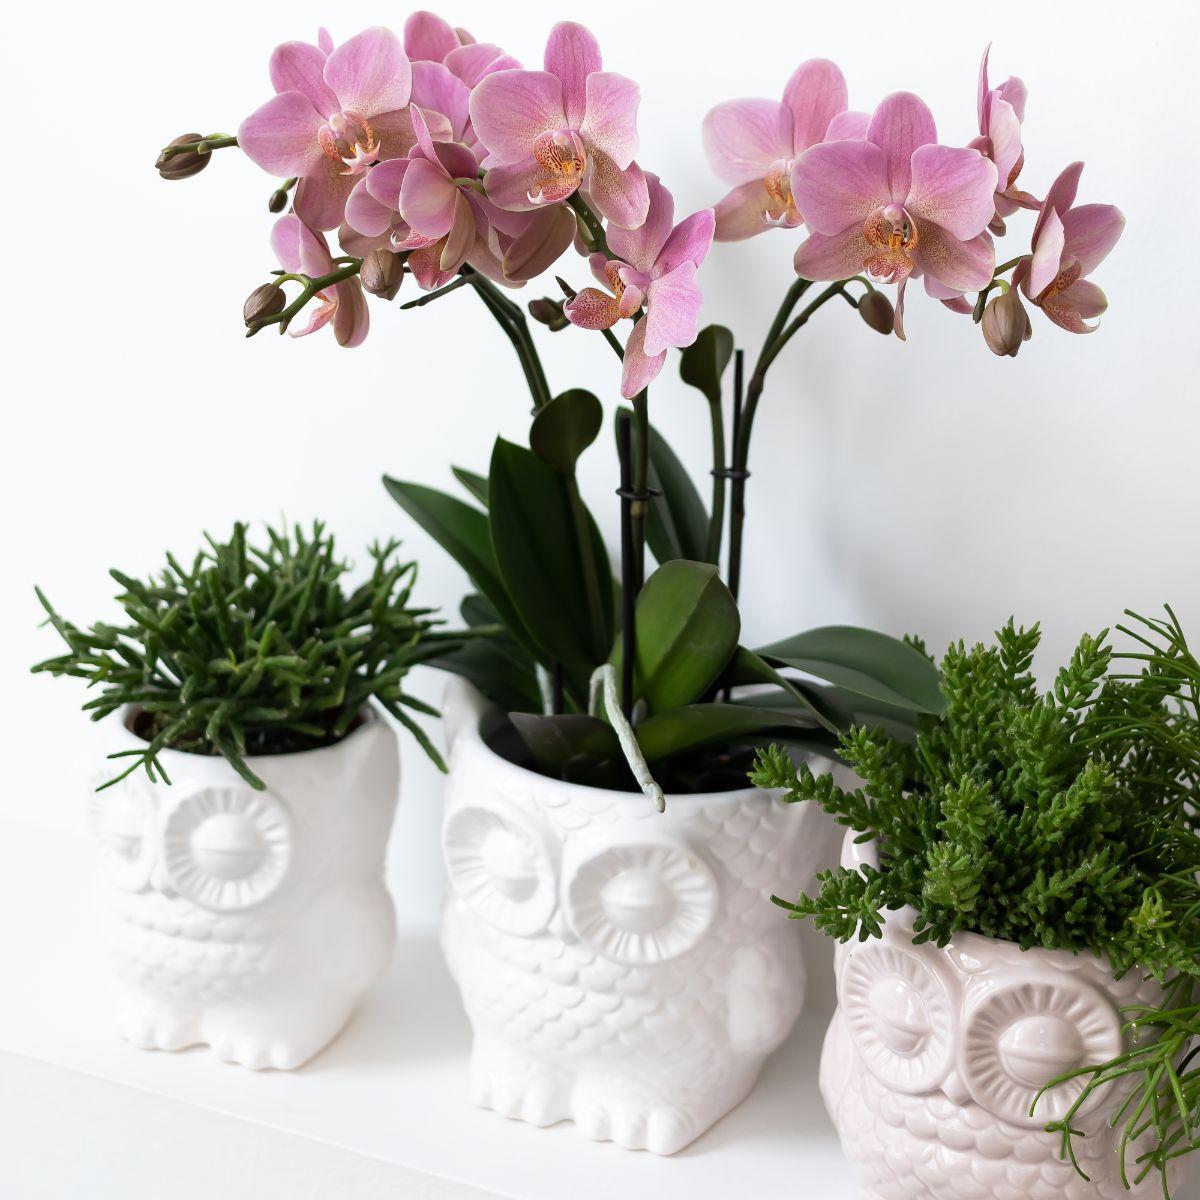 Kolibri Company - Planten set Owl sierpot wit | Set met groene planten Rhipsalis Ø9cm  | incl. witte keramieken sierpotten